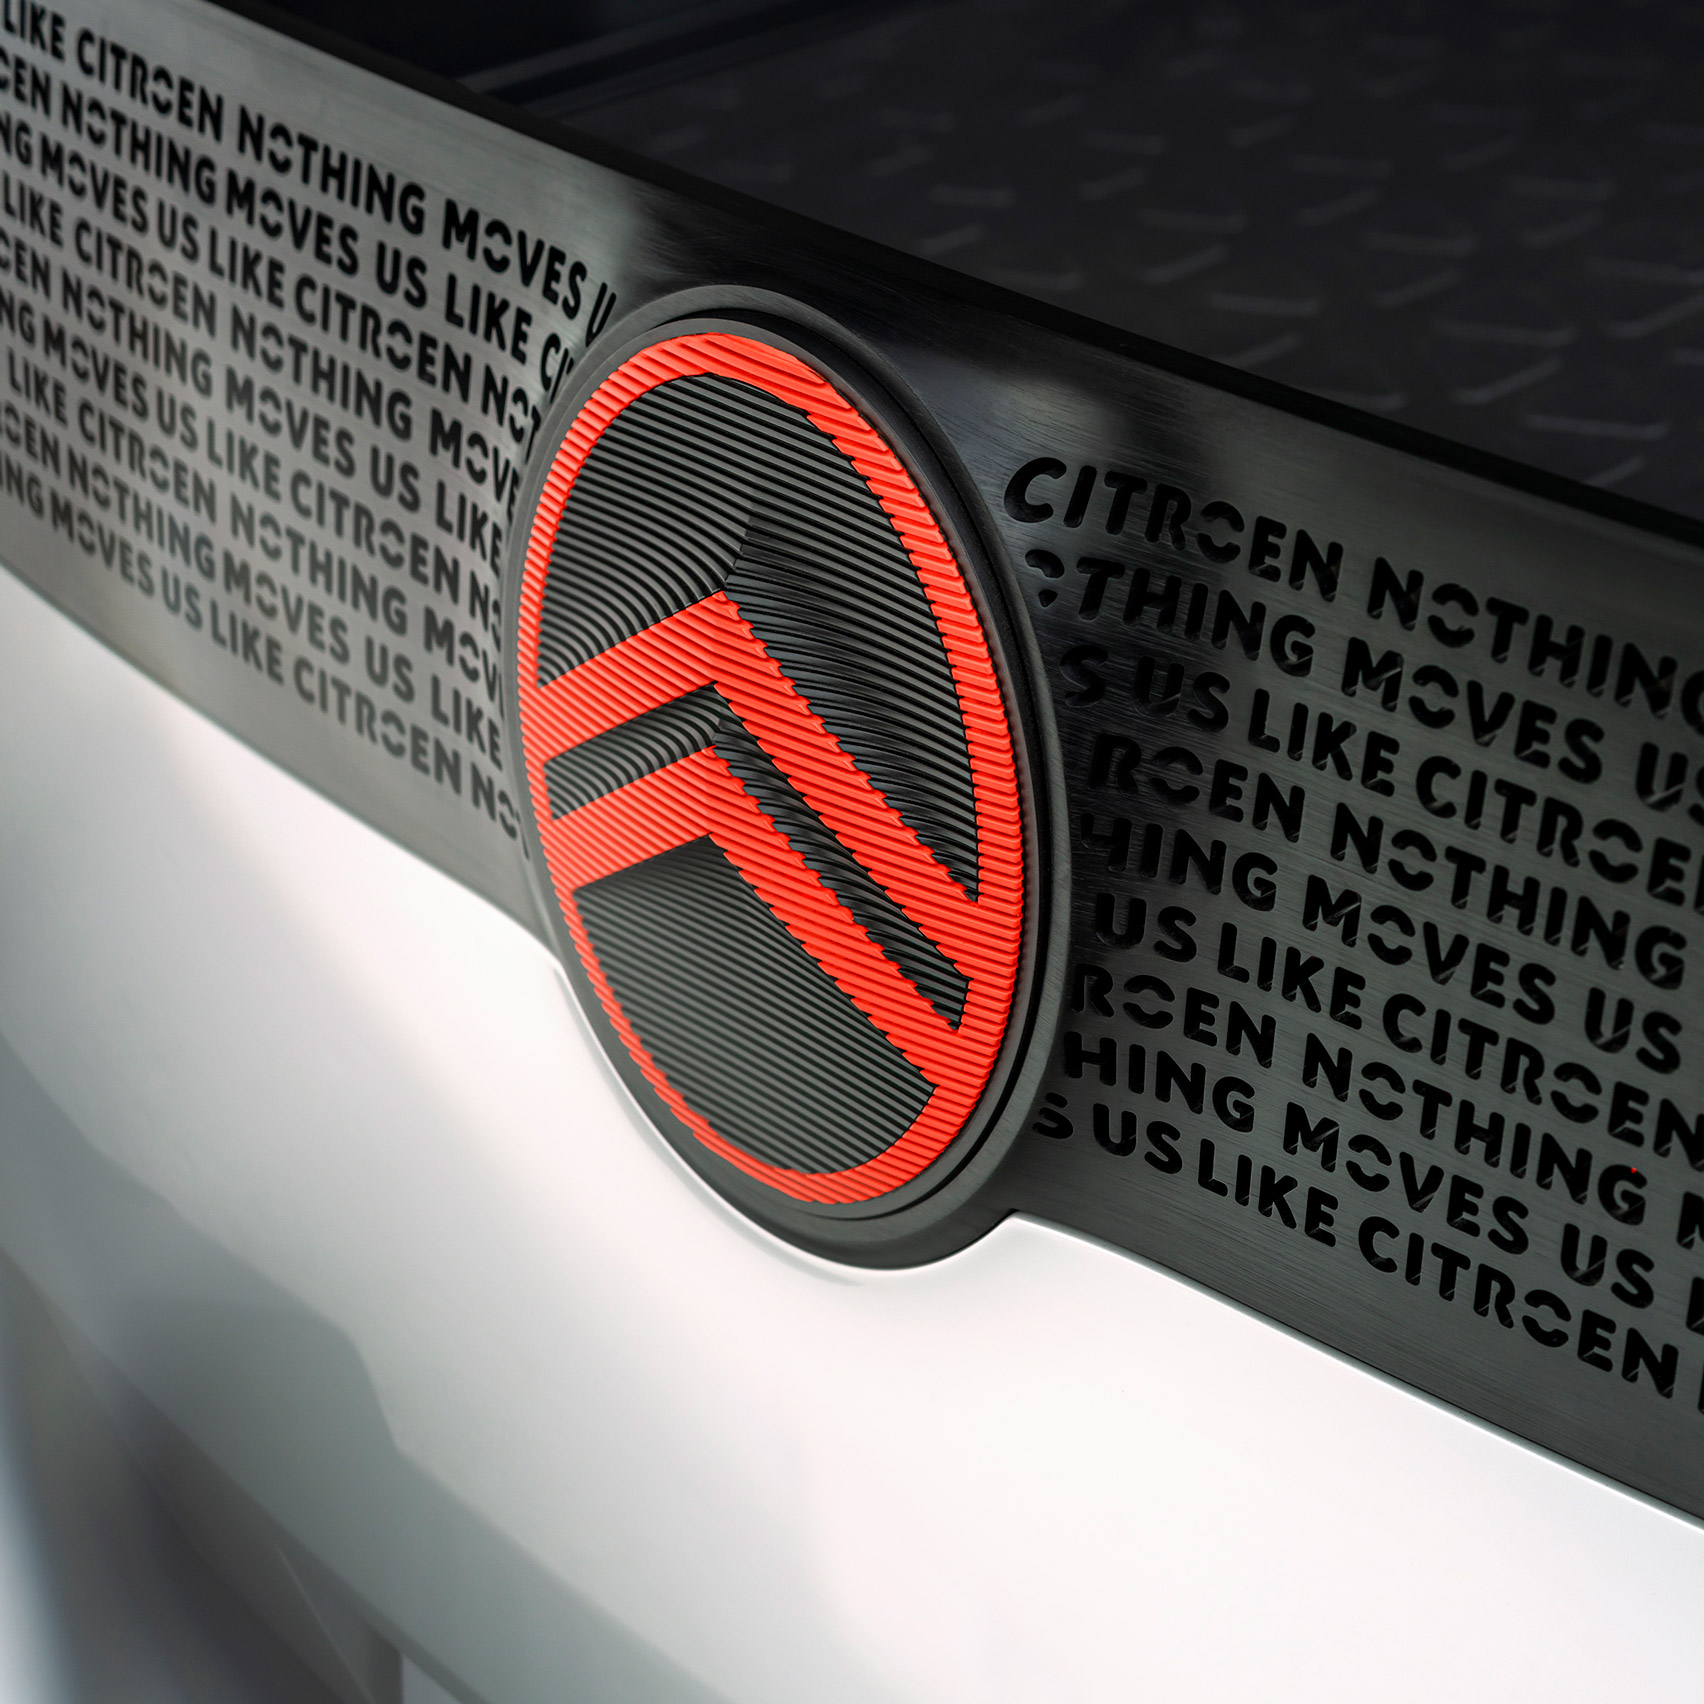 Citroën returns to original logo to create symbol for electric era